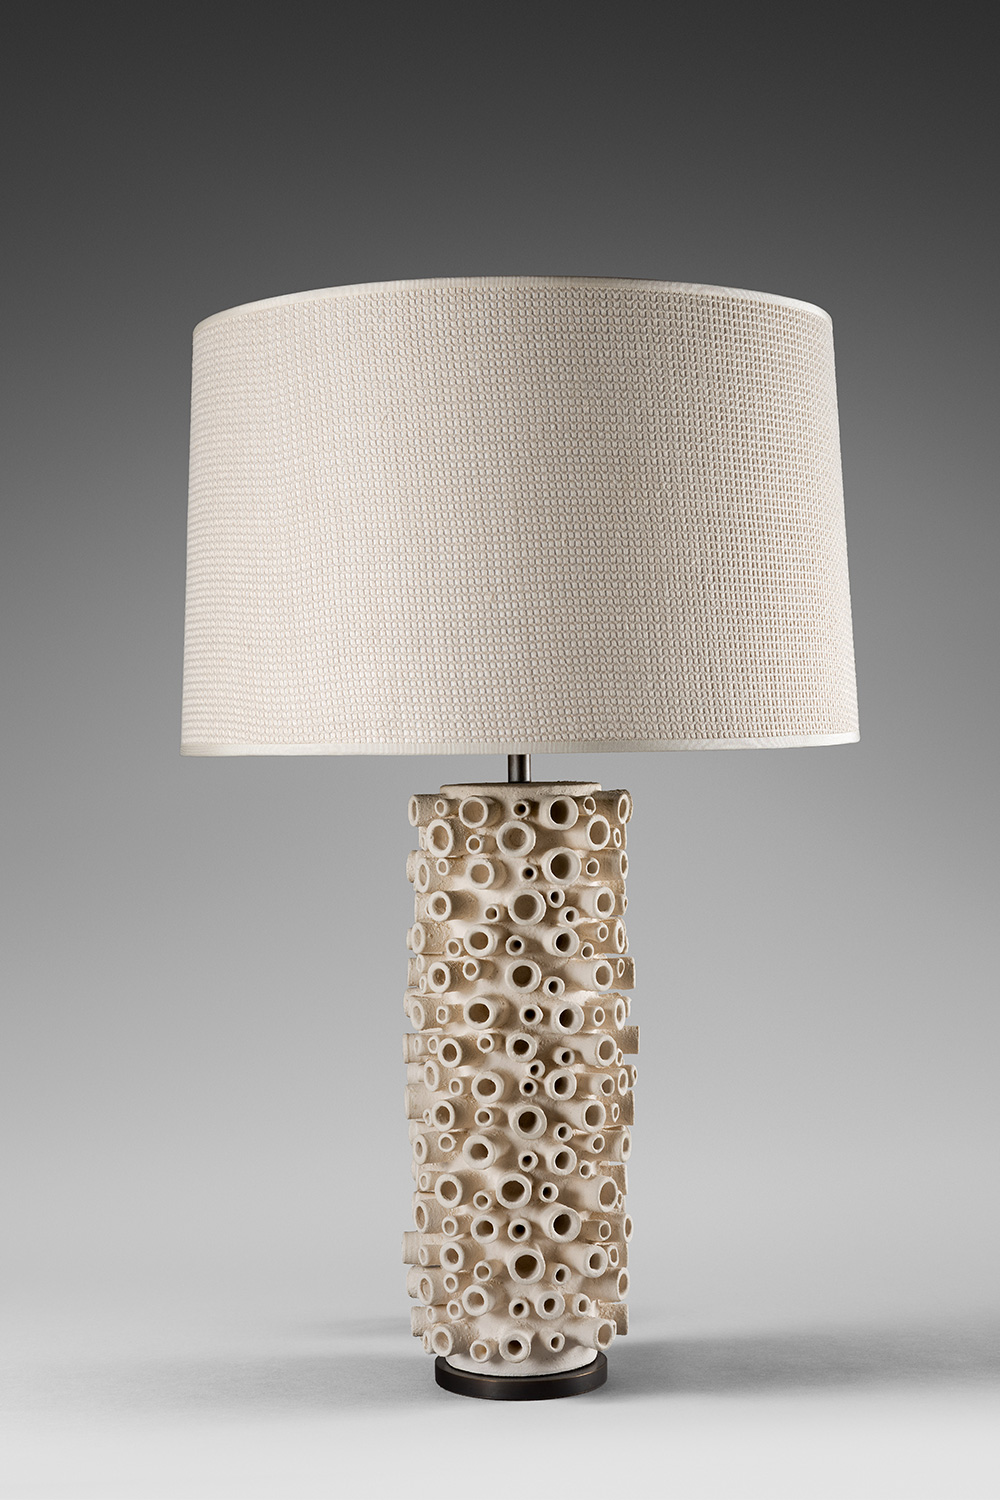 Cream “Coral” lamp